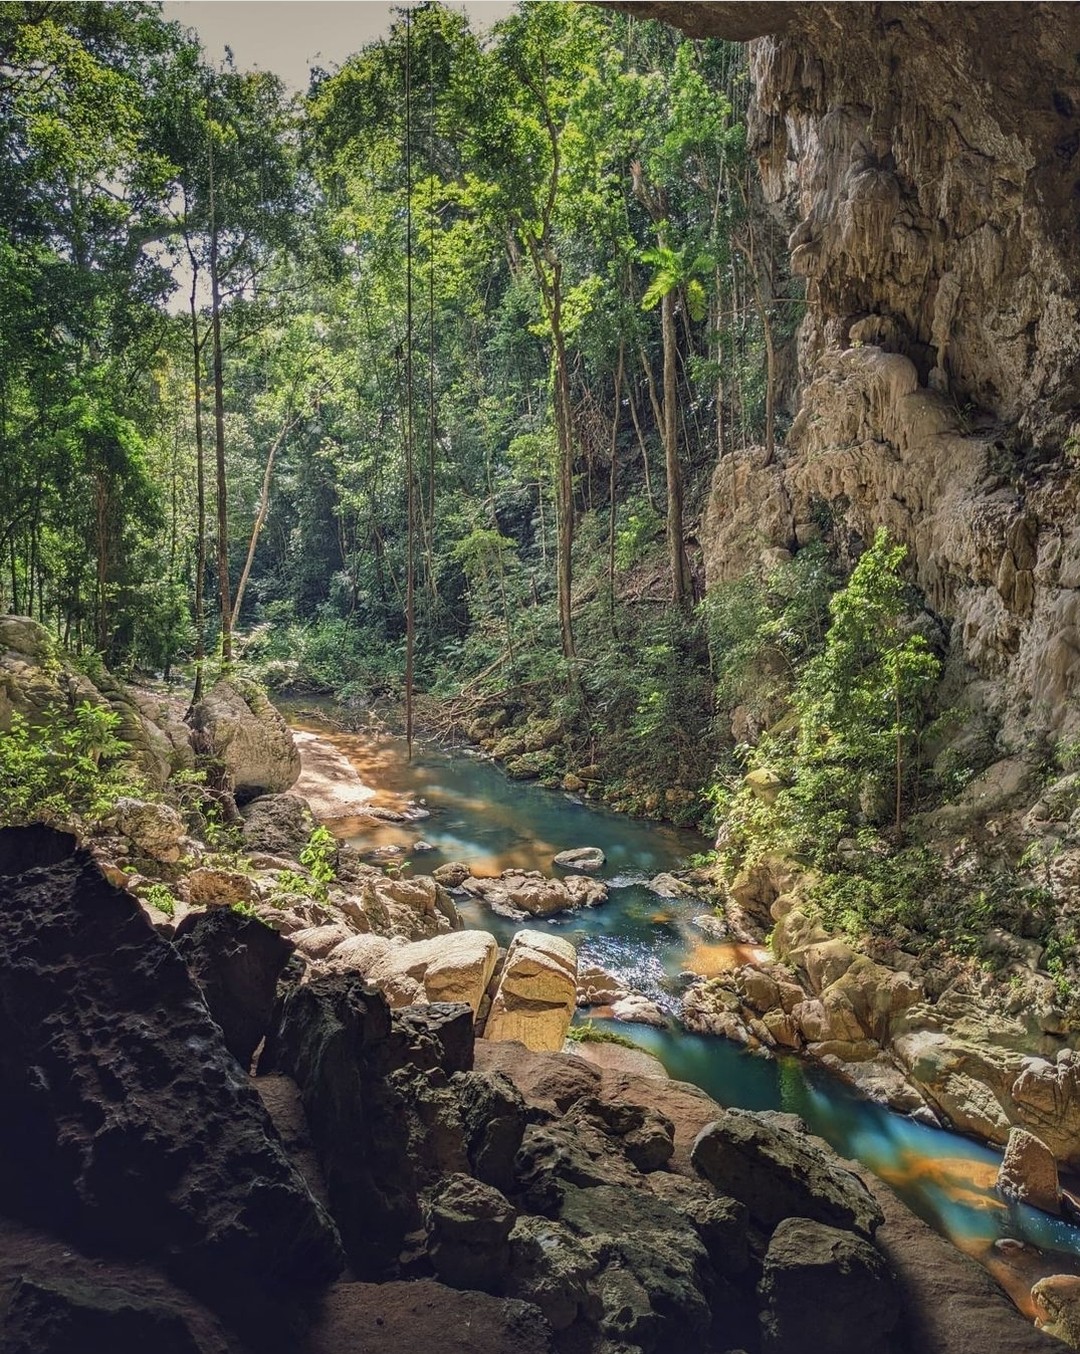 L'ouest du Belize abrite un vaste réseau de grottes qui servaient autrefois d'espaces de culte, de rituels et d'enterrement aux anciens Mayas. Assurez-vous d'ajouter l'une des nombreuses grottes à votre itinéraire à l'intérieur des terres. #travelbelize📸 : @wanderesswithastory